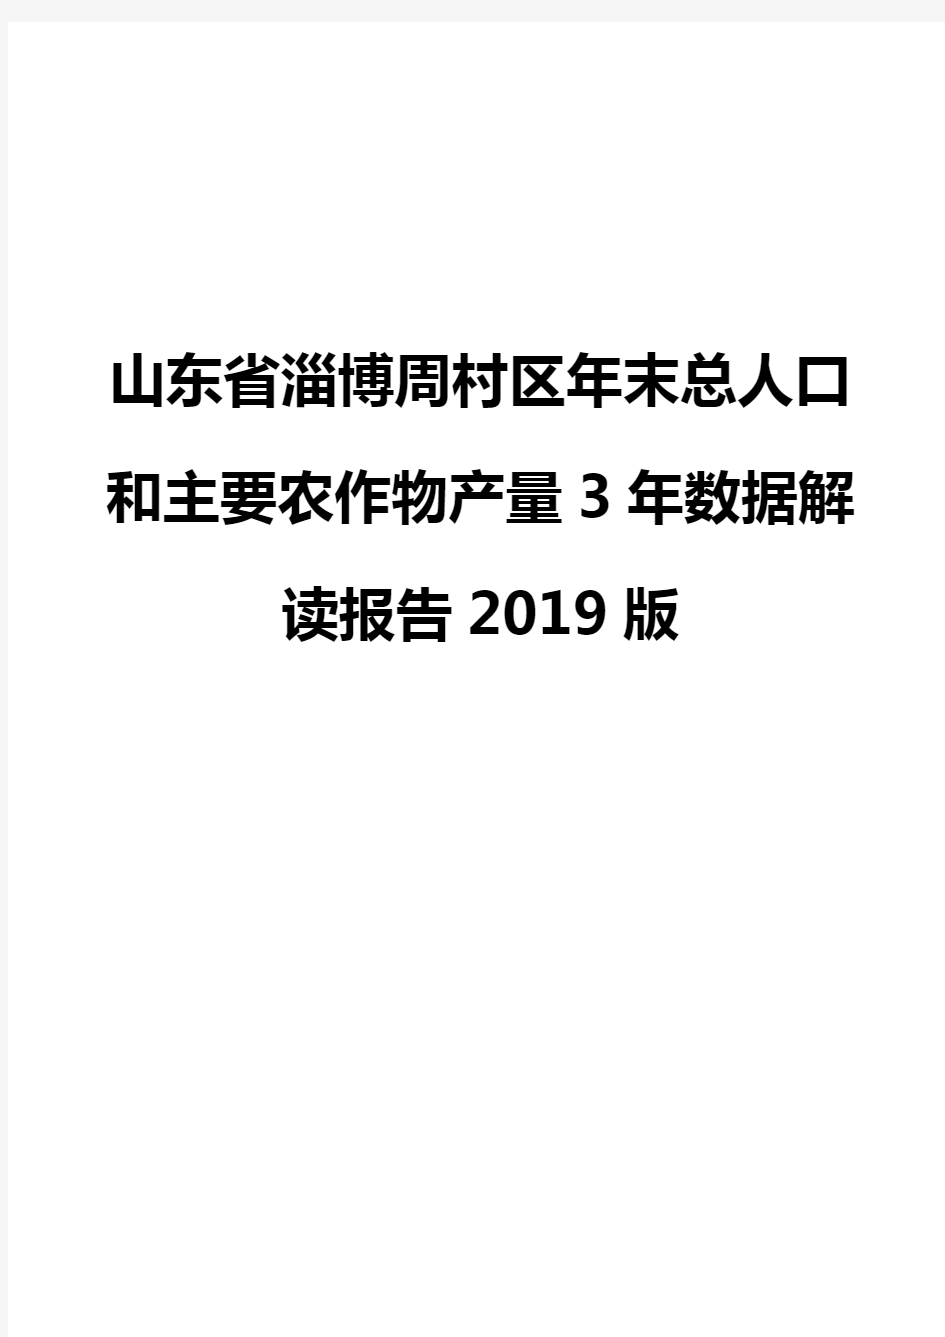 山东省淄博周村区年末总人口和主要农作物产量3年数据解读报告2019版